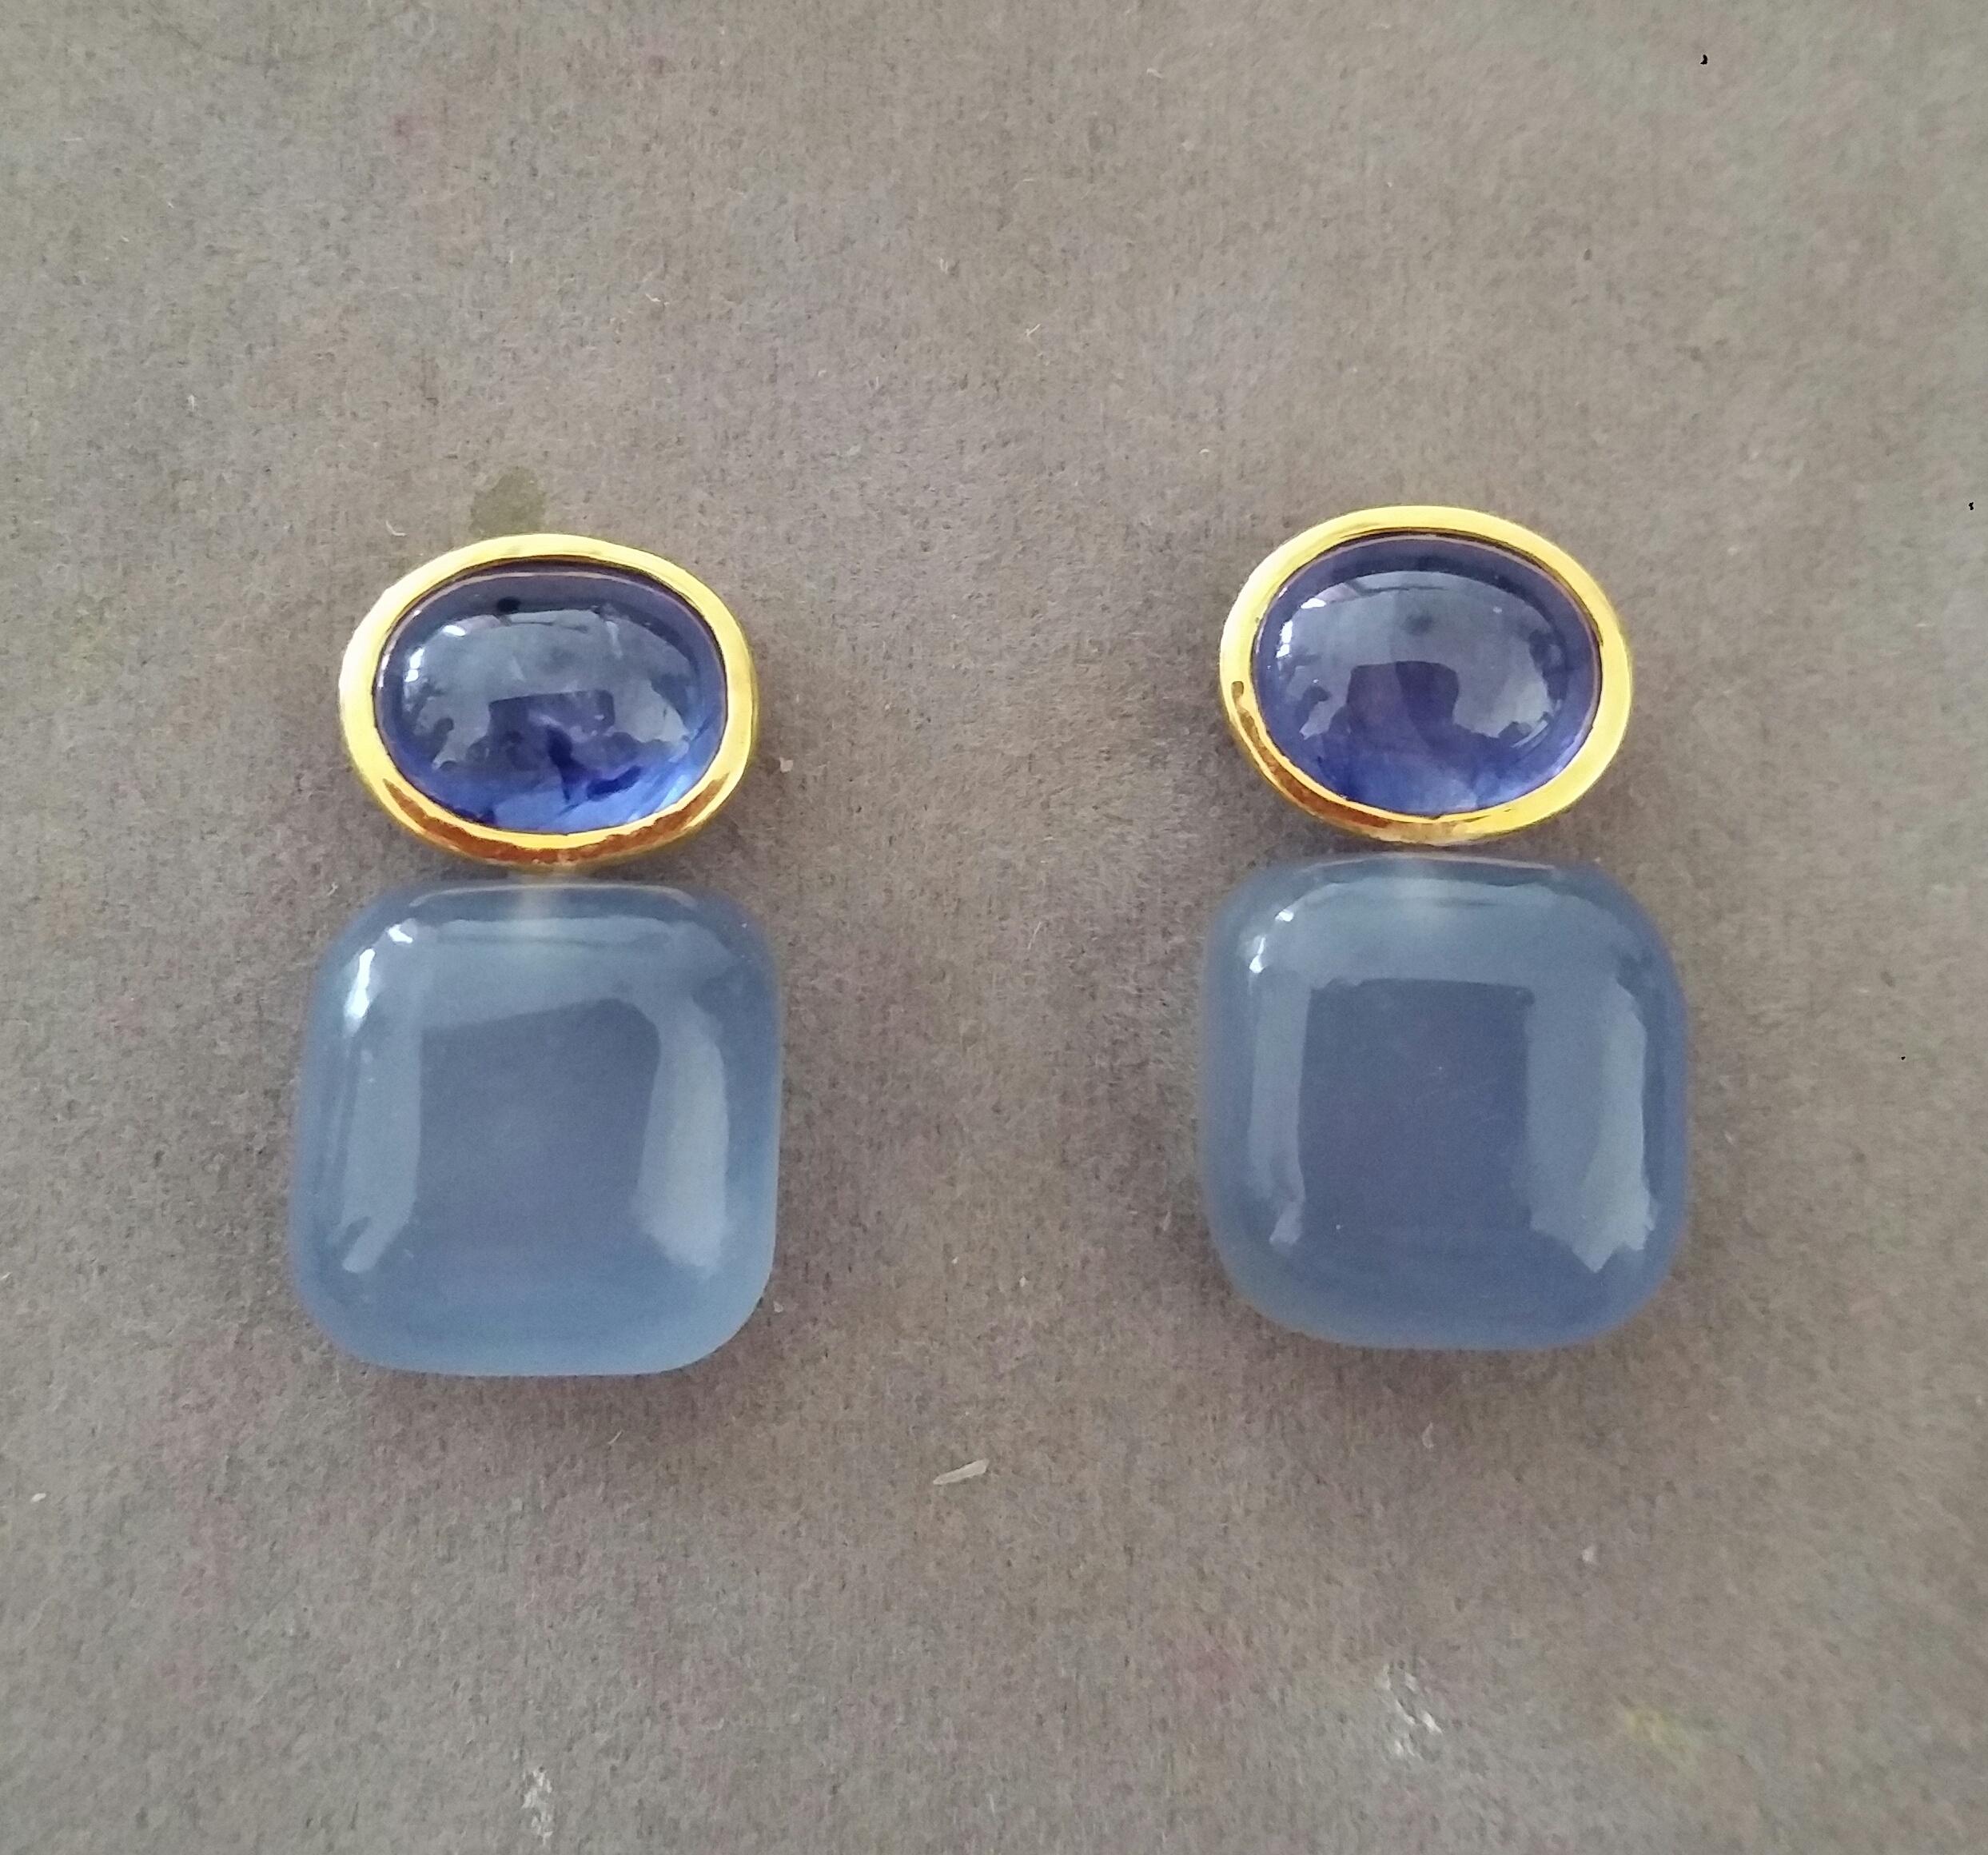 Diese einfachen, aber eleganten und handgefertigten Ohrringe haben 2 ovale  Blauer Saphir mit einer Größe von 8 x 10 mm, eingefasst in eine Lünette aus 14 Kt Gelbgold  an der Spitze, an der 2  Blauer Chalcedon in Kissenform  mit den Maßen 14 x 14